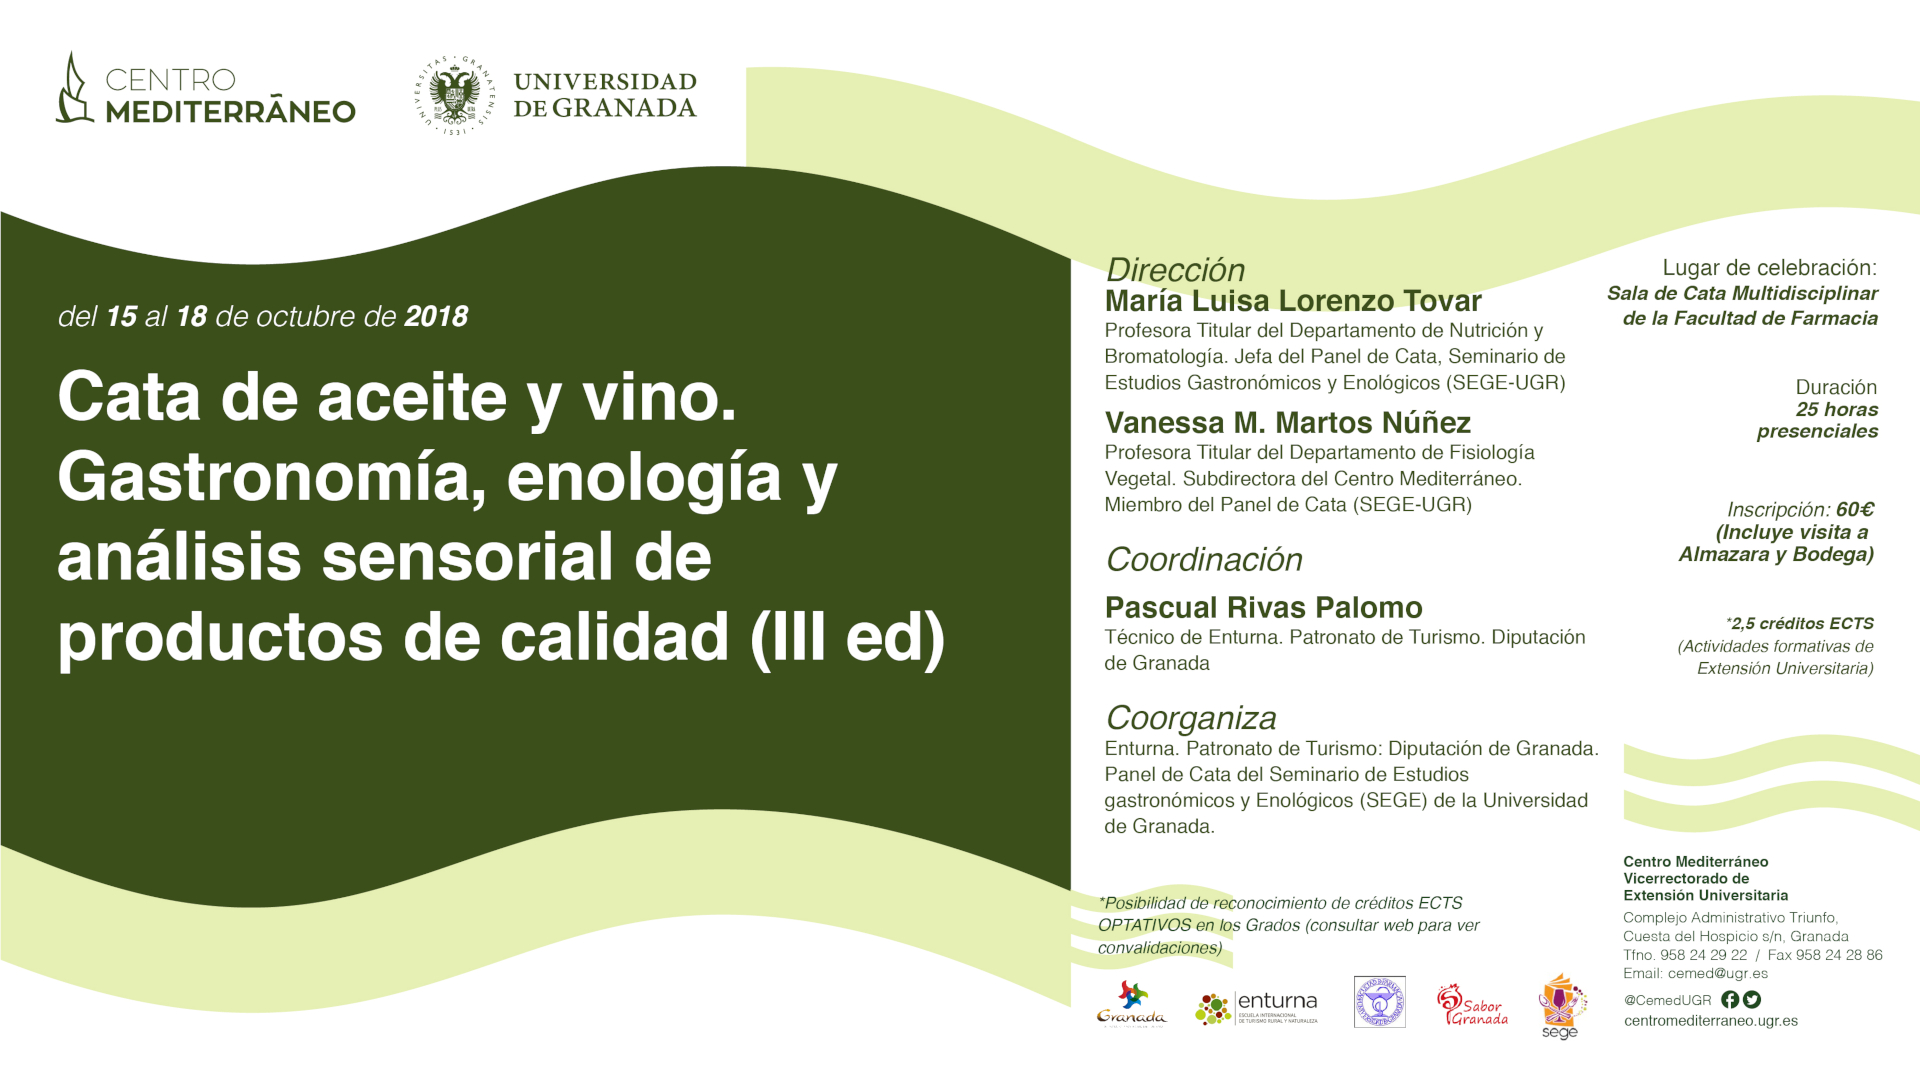  Cata de aceite y vino. Gastronomía, enología y análisis sensorial de productos de calidad (III ed).